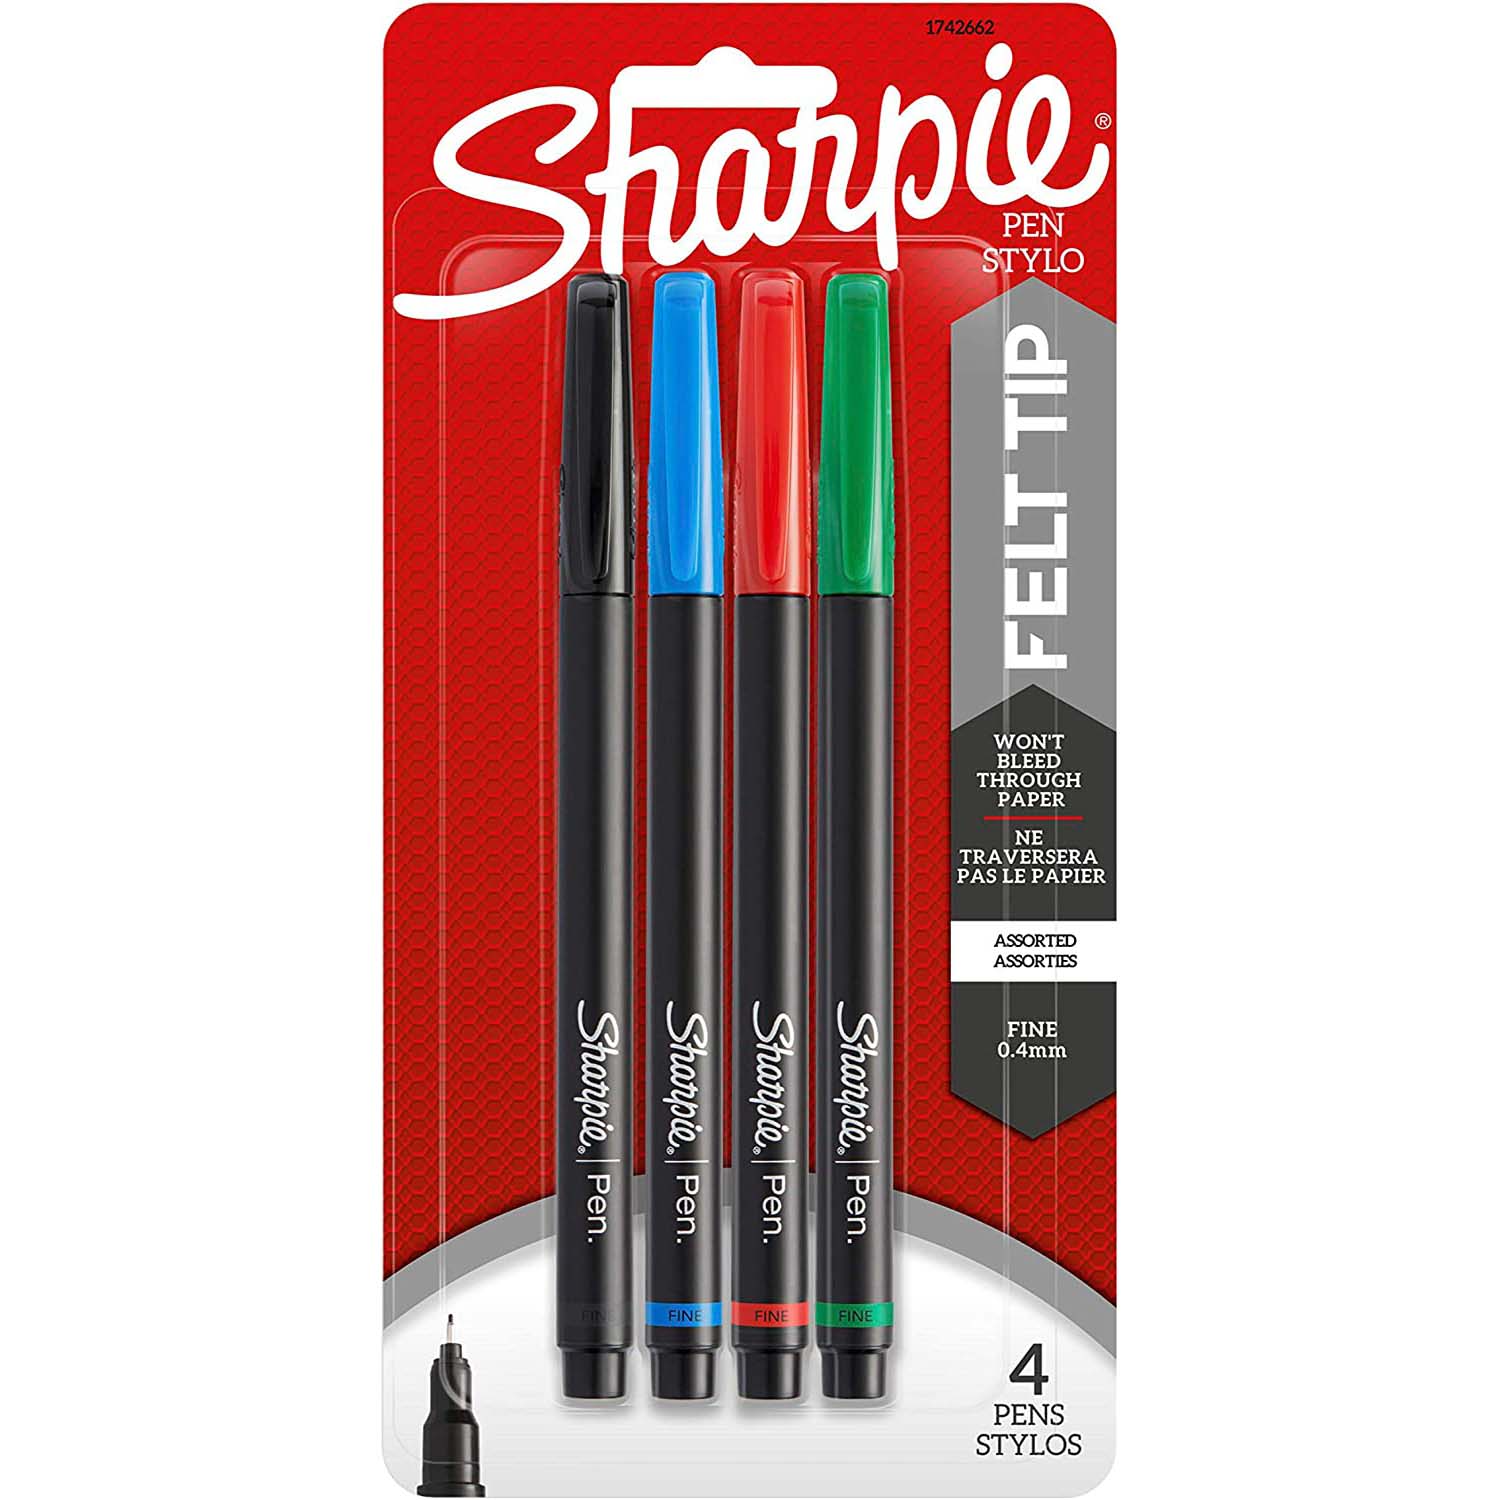 Sharpie Pen Fine Point Pen, 4 Colored Pens